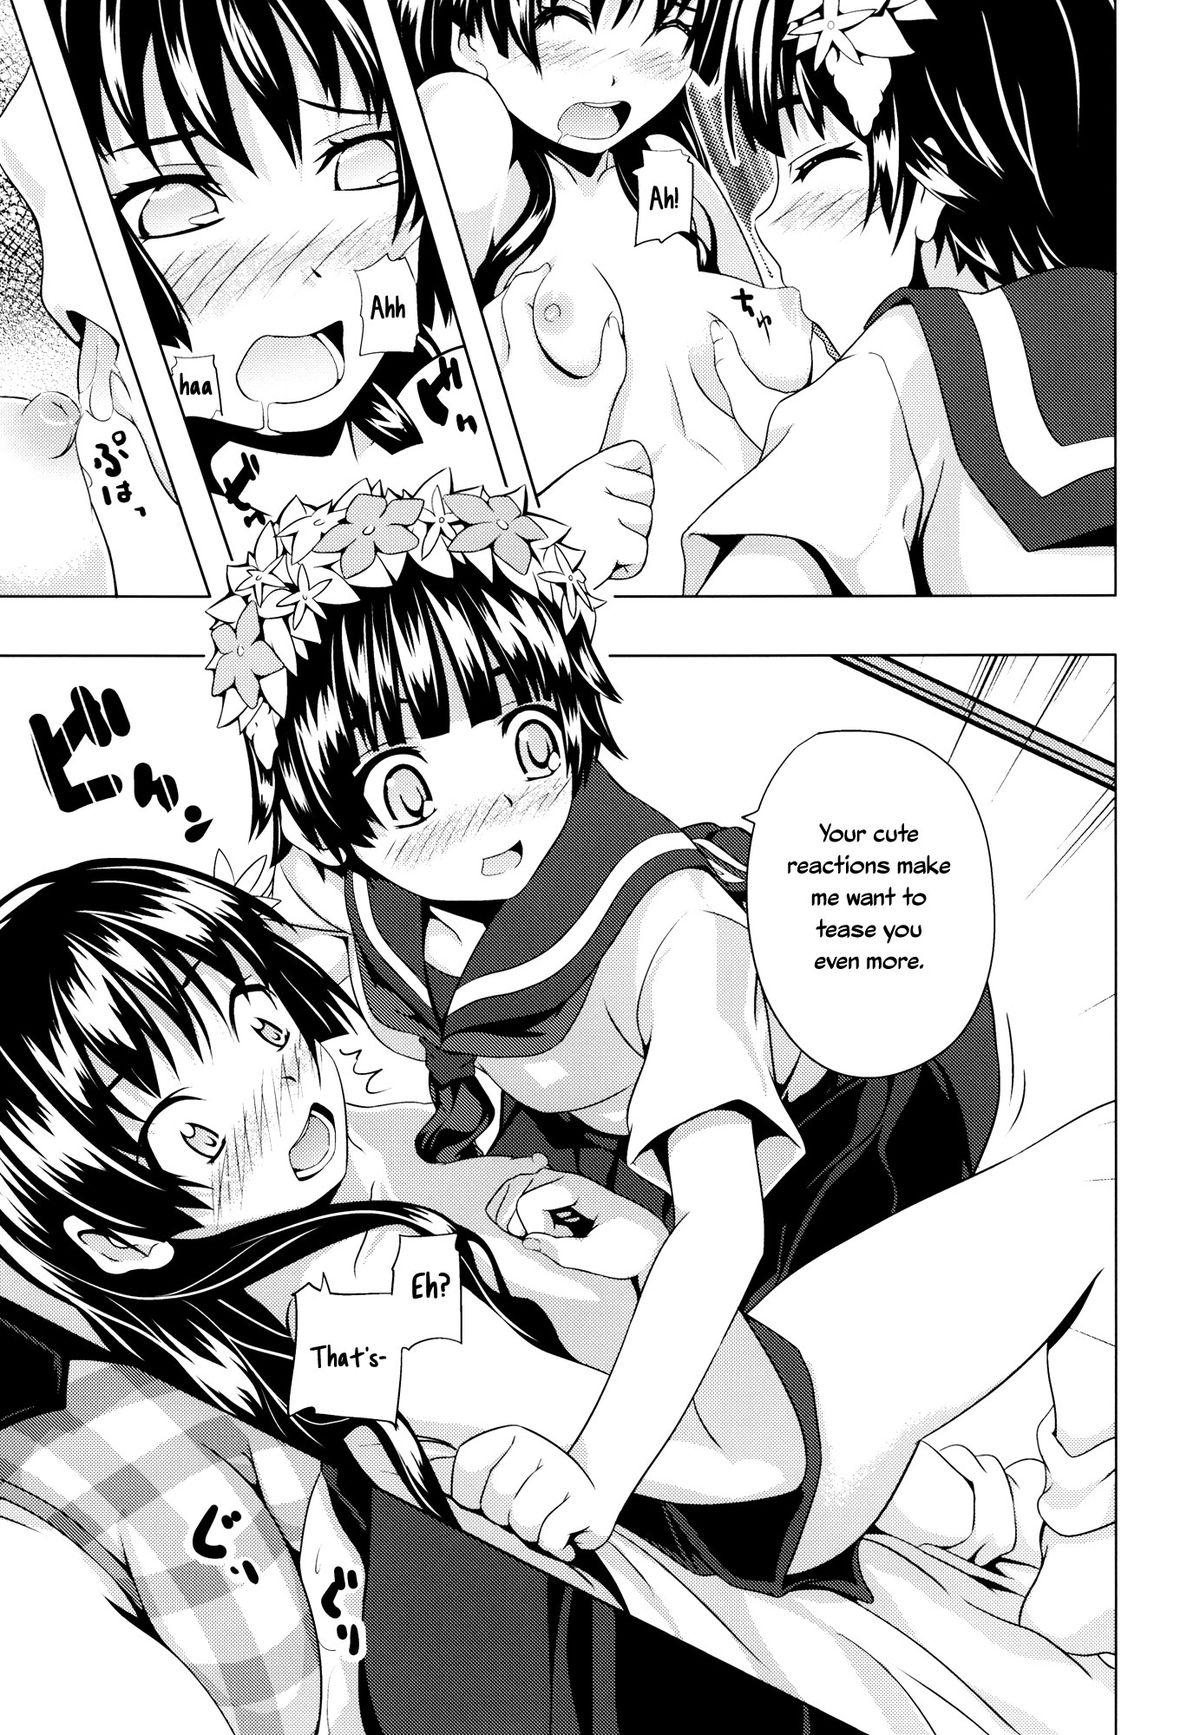 Sis Uiharu no U Saten no Sa - Toaru kagaku no railgun Gaygroupsex - Page 11